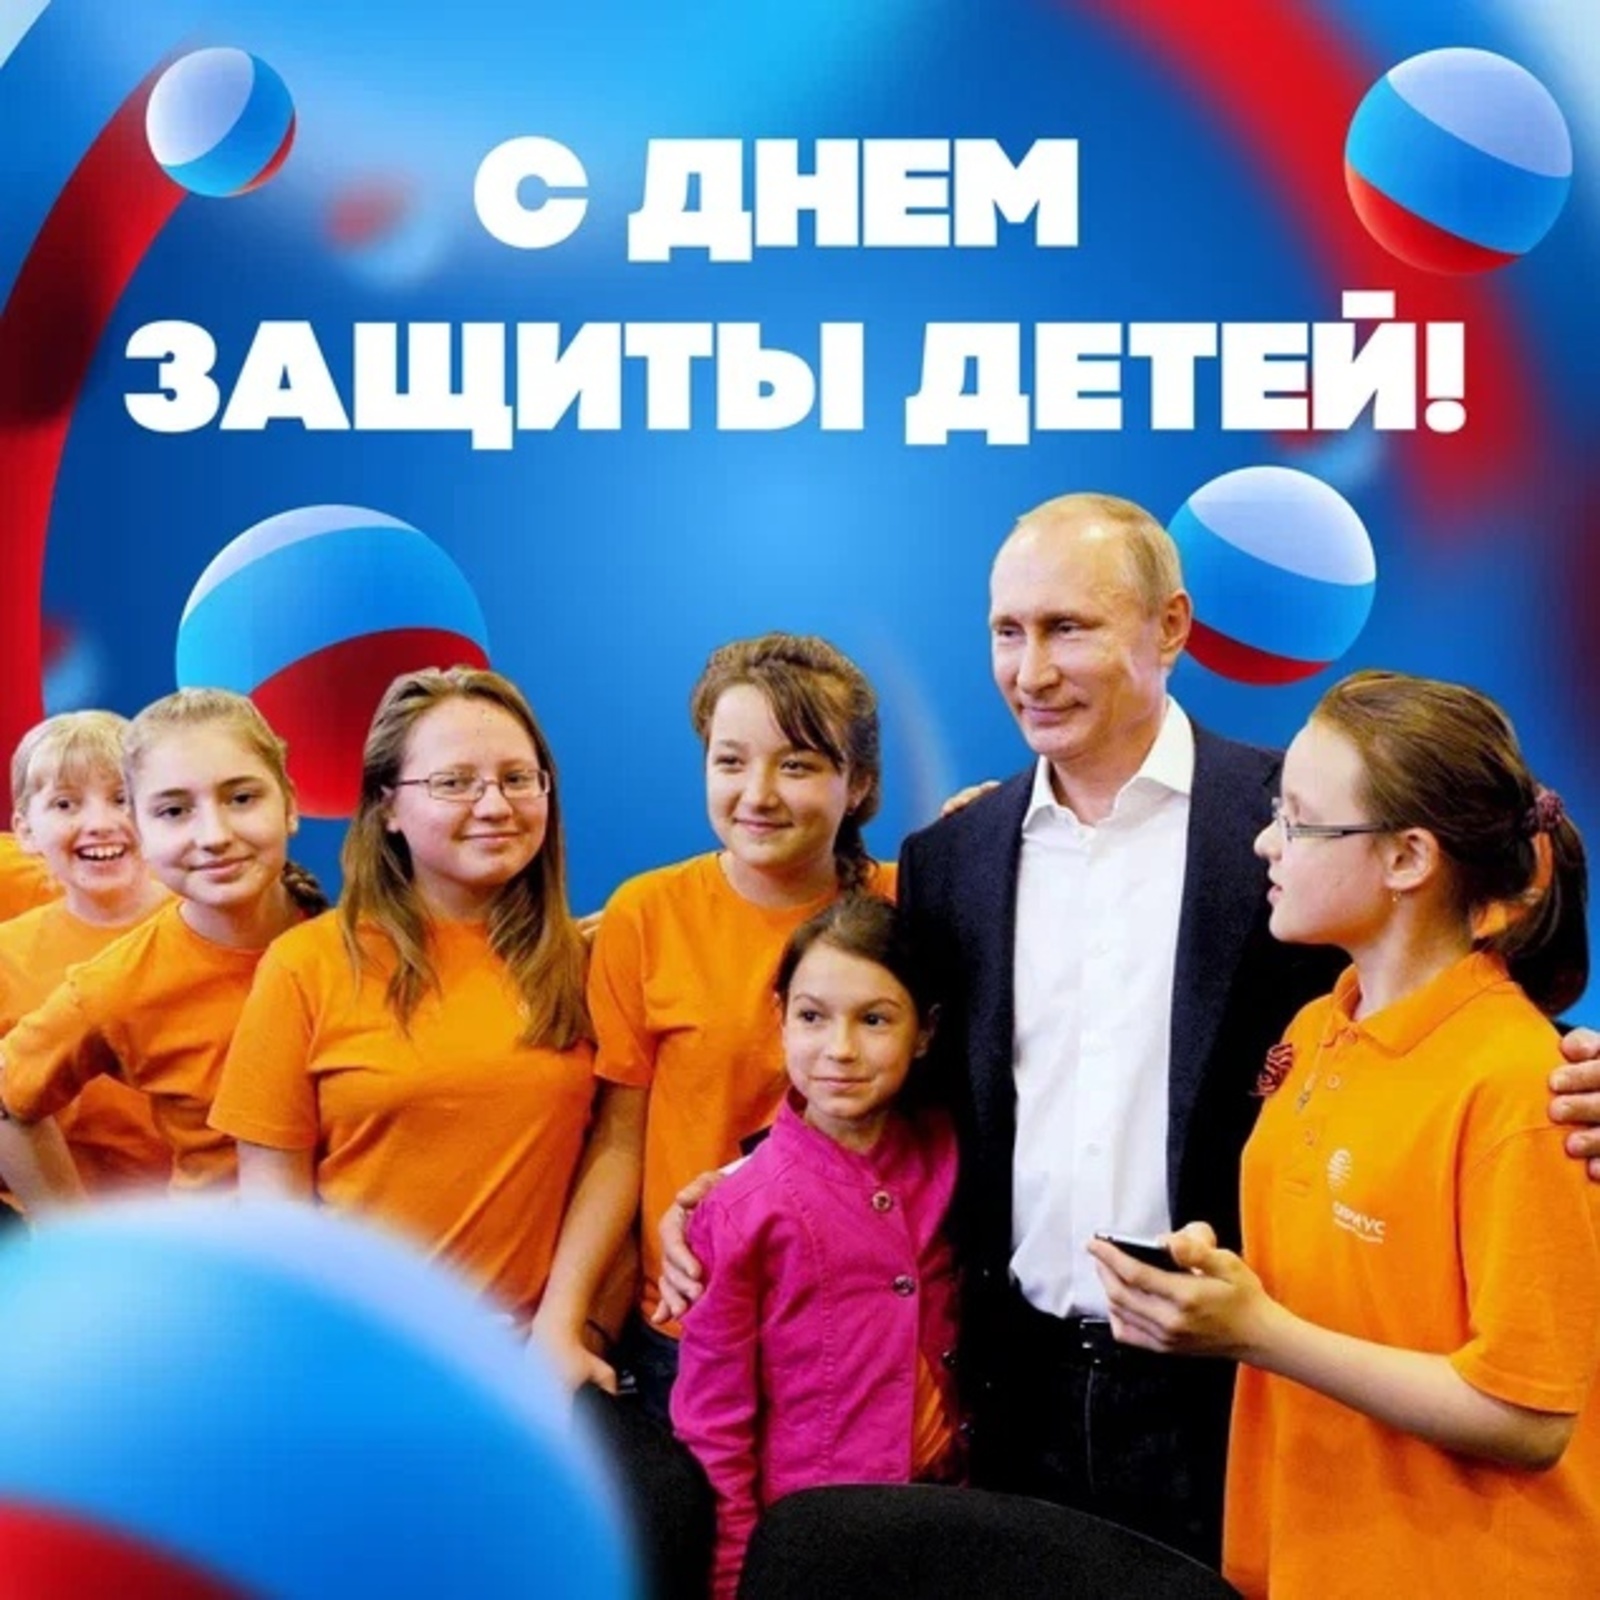 Владимир Путин поздравил россиян с Днем защиты детей